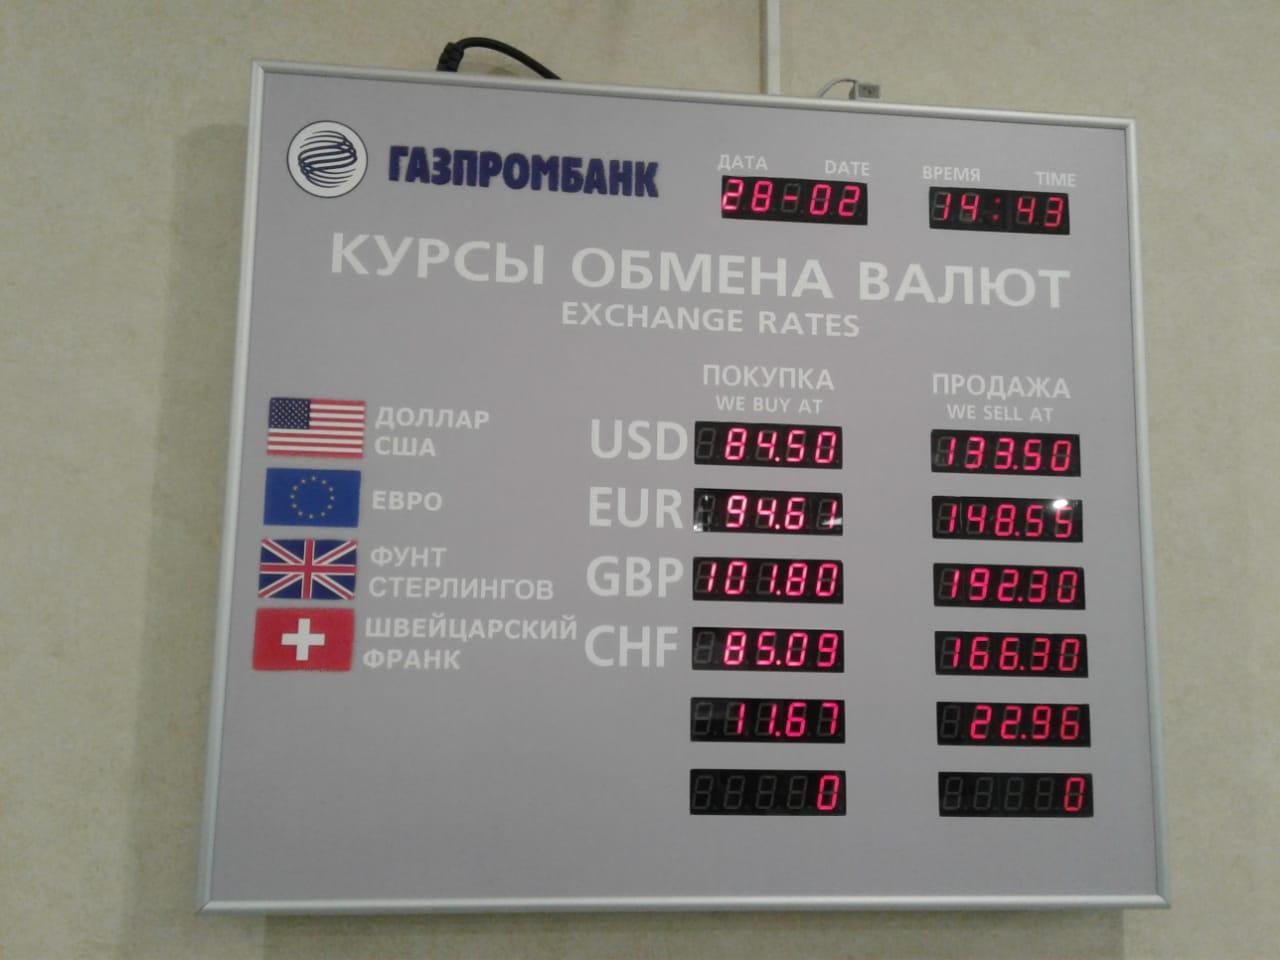 Купить доллары евро в банках. Обмен валюты. Курс валют. Курс валют на сегодня. Курсы валют в рублях.